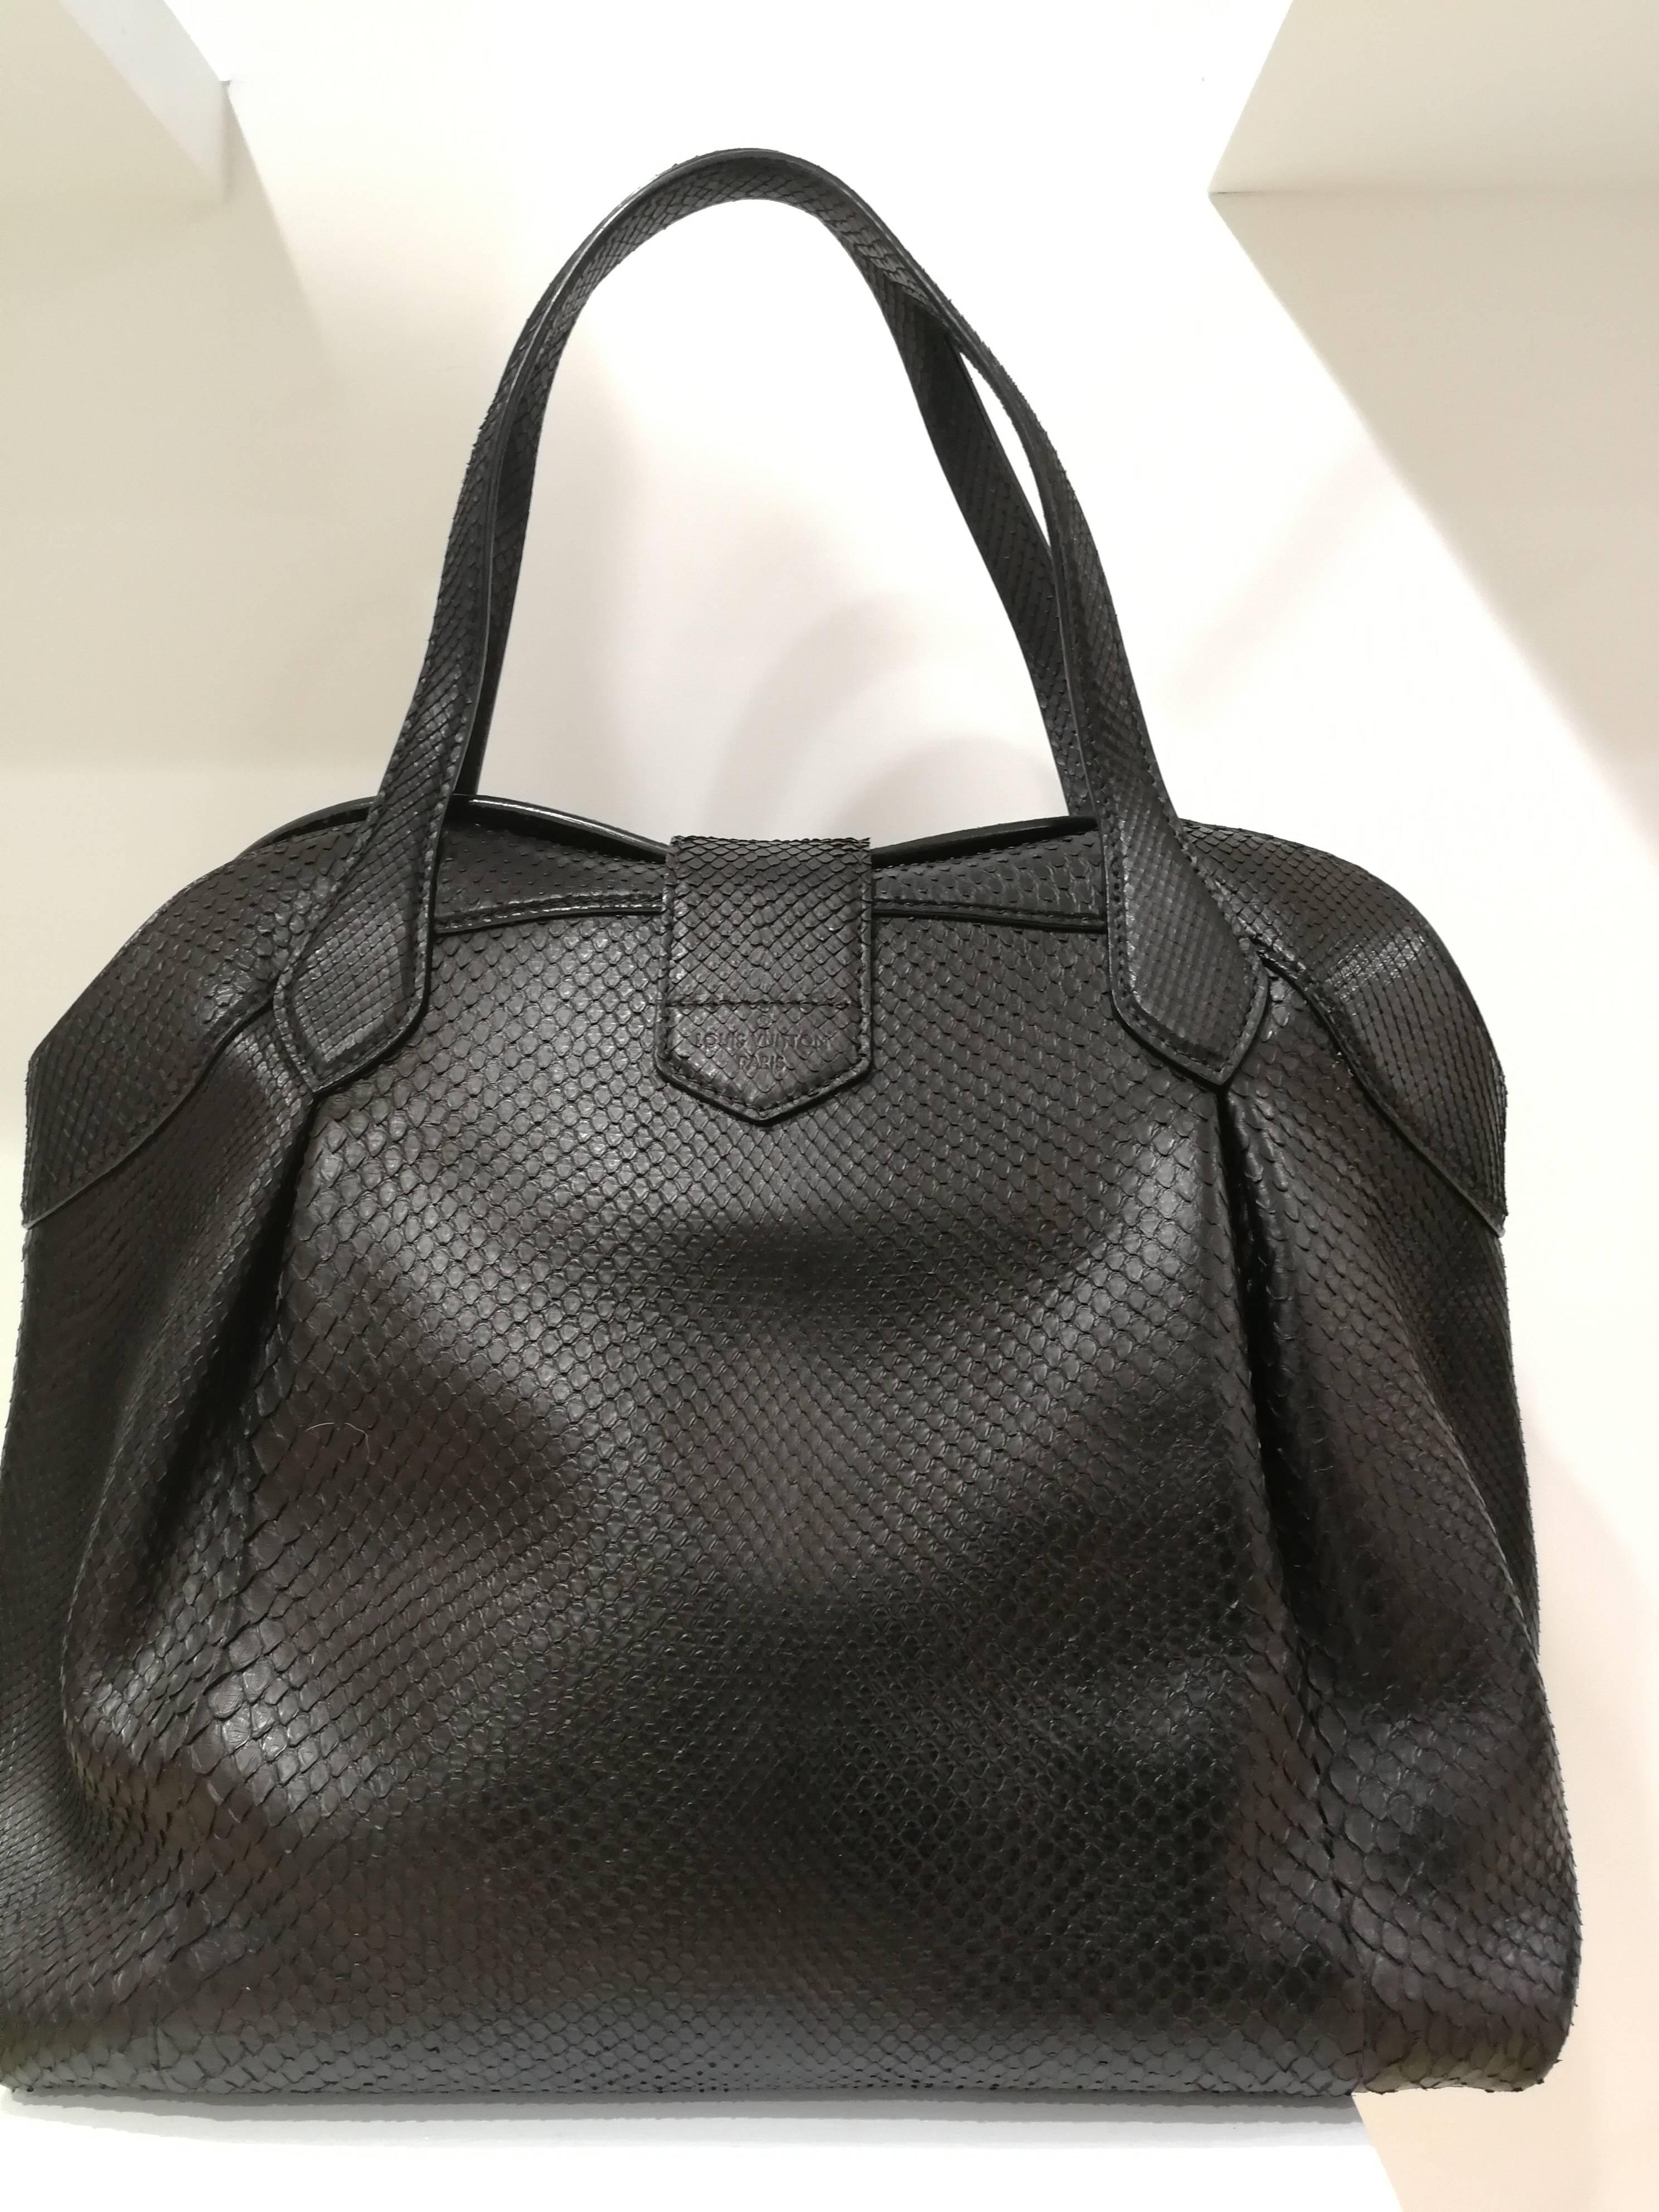 Louis Vuitton Tasche aus schwarzem Pythonleder Limited Edition
Silberfarbene Hardware
ungetragen
noch mit blauer Garantie für silberne Nieten Sicherheit